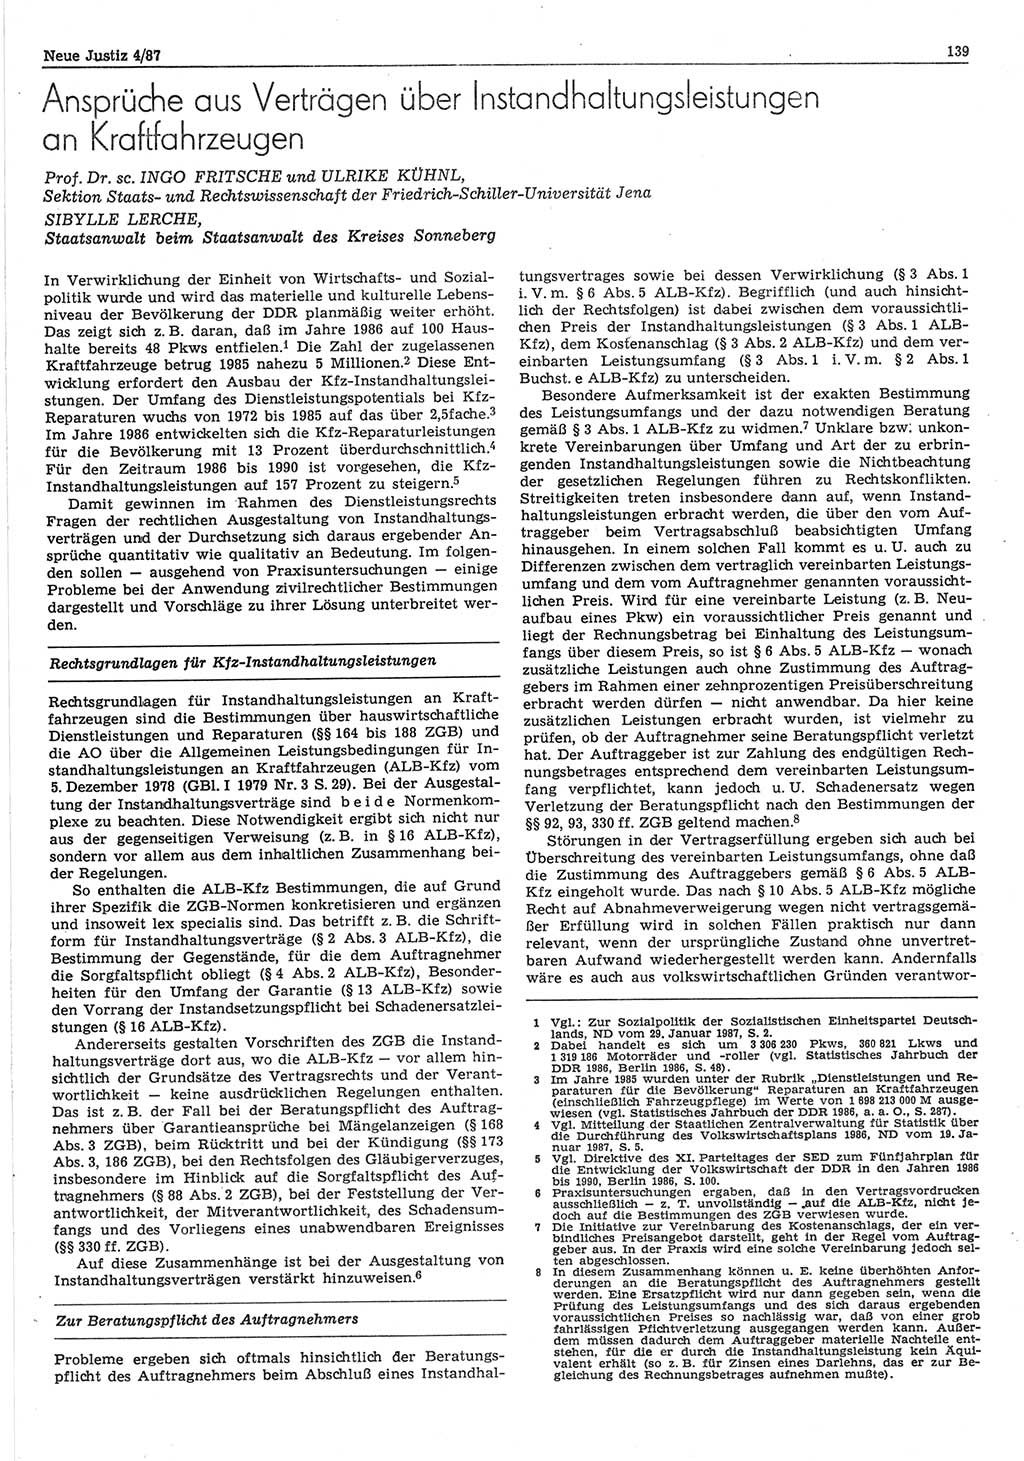 Neue Justiz (NJ), Zeitschrift für sozialistisches Recht und Gesetzlichkeit [Deutsche Demokratische Republik (DDR)], 41. Jahrgang 1987, Seite 139 (NJ DDR 1987, S. 139)